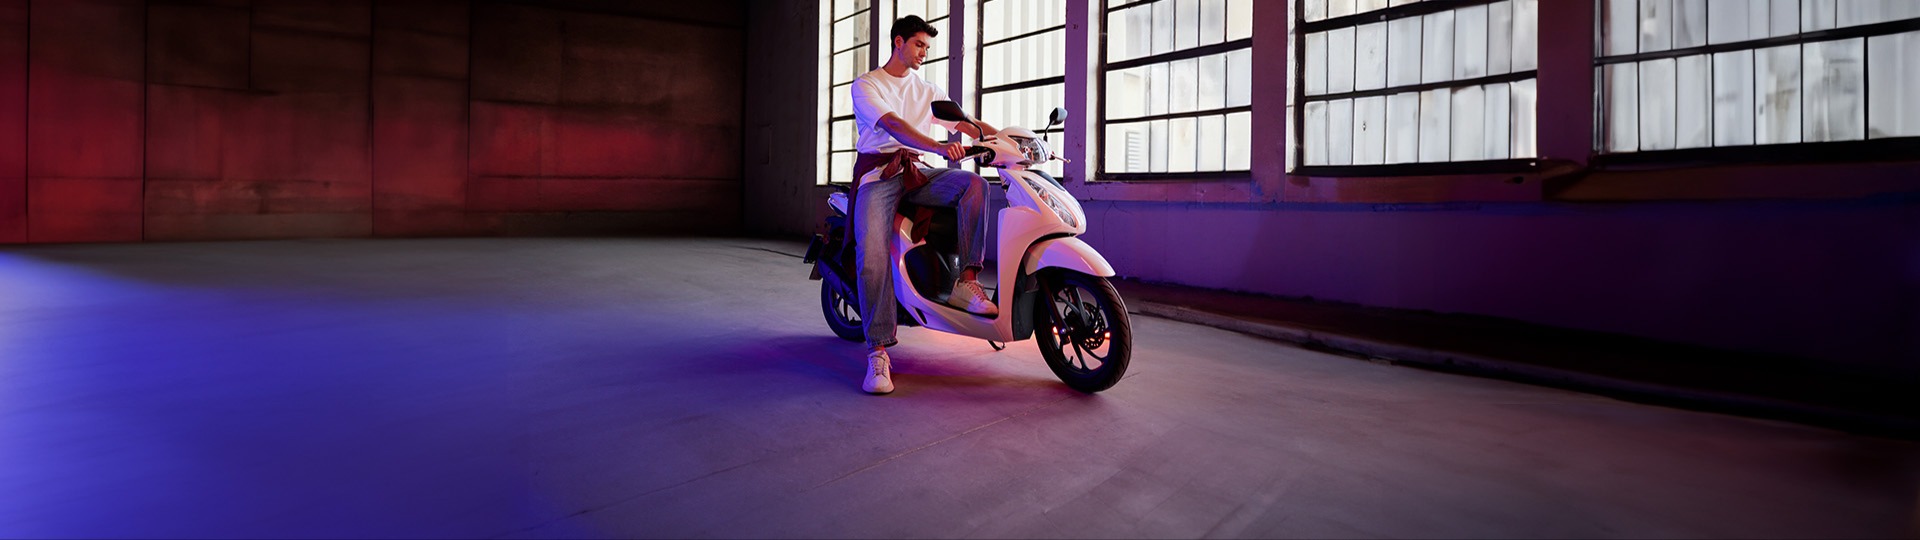  Özkaya Motor 40.000 TL’ye vade farksız 12 ay taksitle sizin de ilk motosikletiniz Honda Dio olsun.